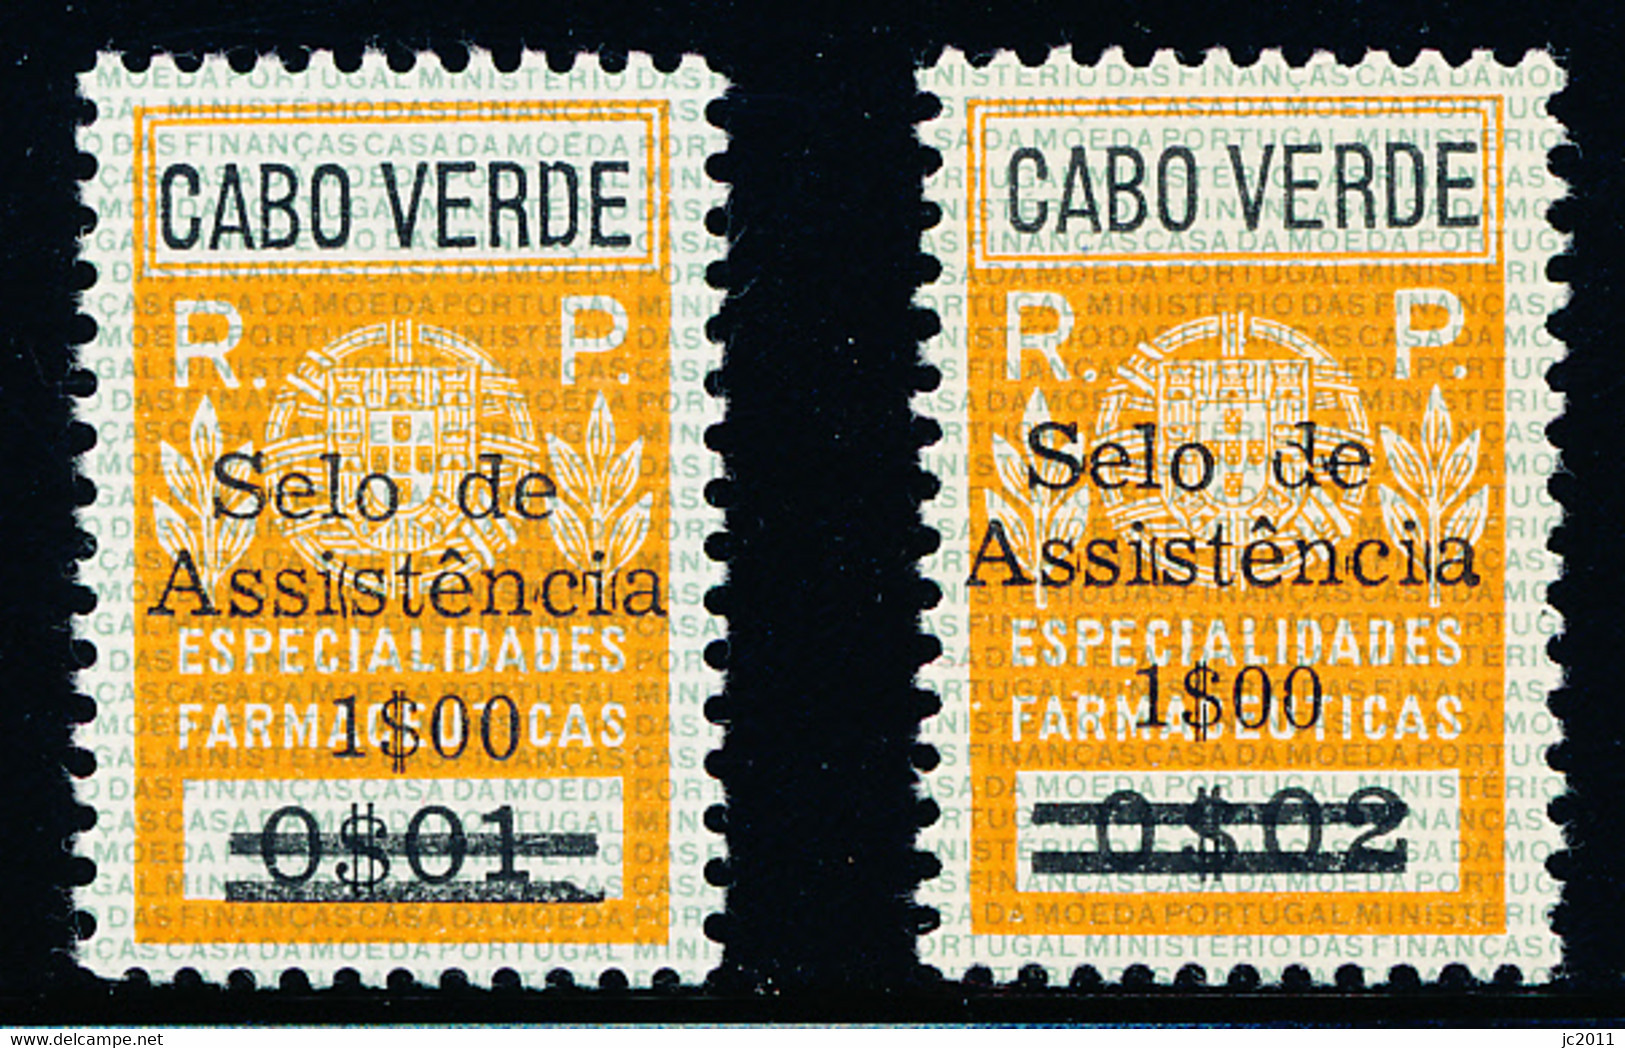 Cabo Verde - 1967 - Charaty Tax / Especialidades Farmacêuticas - MNH - Cap Vert